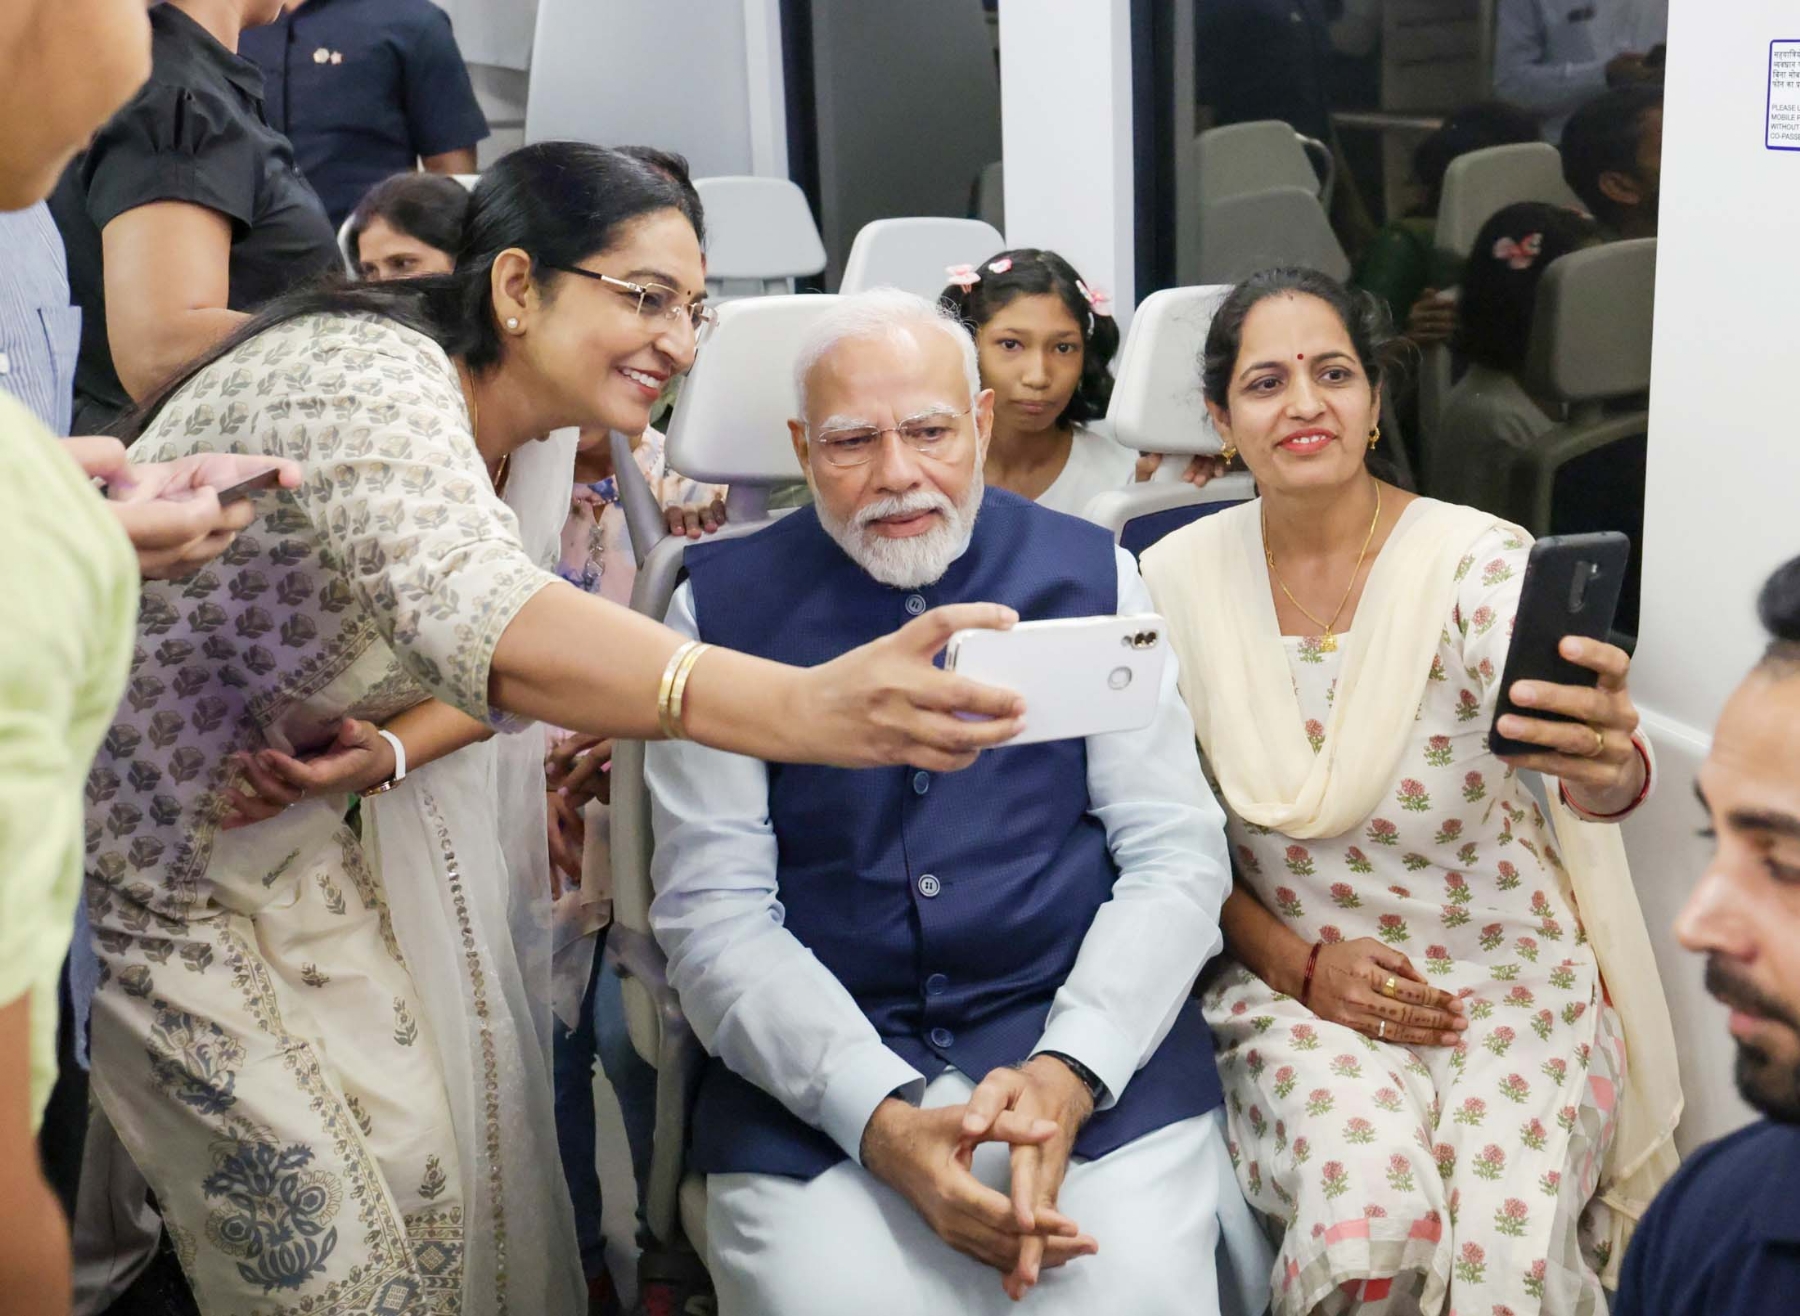 नई दिल्ली में रविवार 17 सितंबर 2023 को प्रधानमंत्री नरेंद्र मोदी ने रविवार, 17 सितंबर, 2023 को नई दिल्ली में दिल्ली एयरपोर्ट मेट्रो एक्सप्रेस लाइन के विस्तार का उद्घाटन करने के बाद दिल्ली मेट्रो के कर्मचारियों और आम बच्चे, महिलाओं के साथ बातचीत की